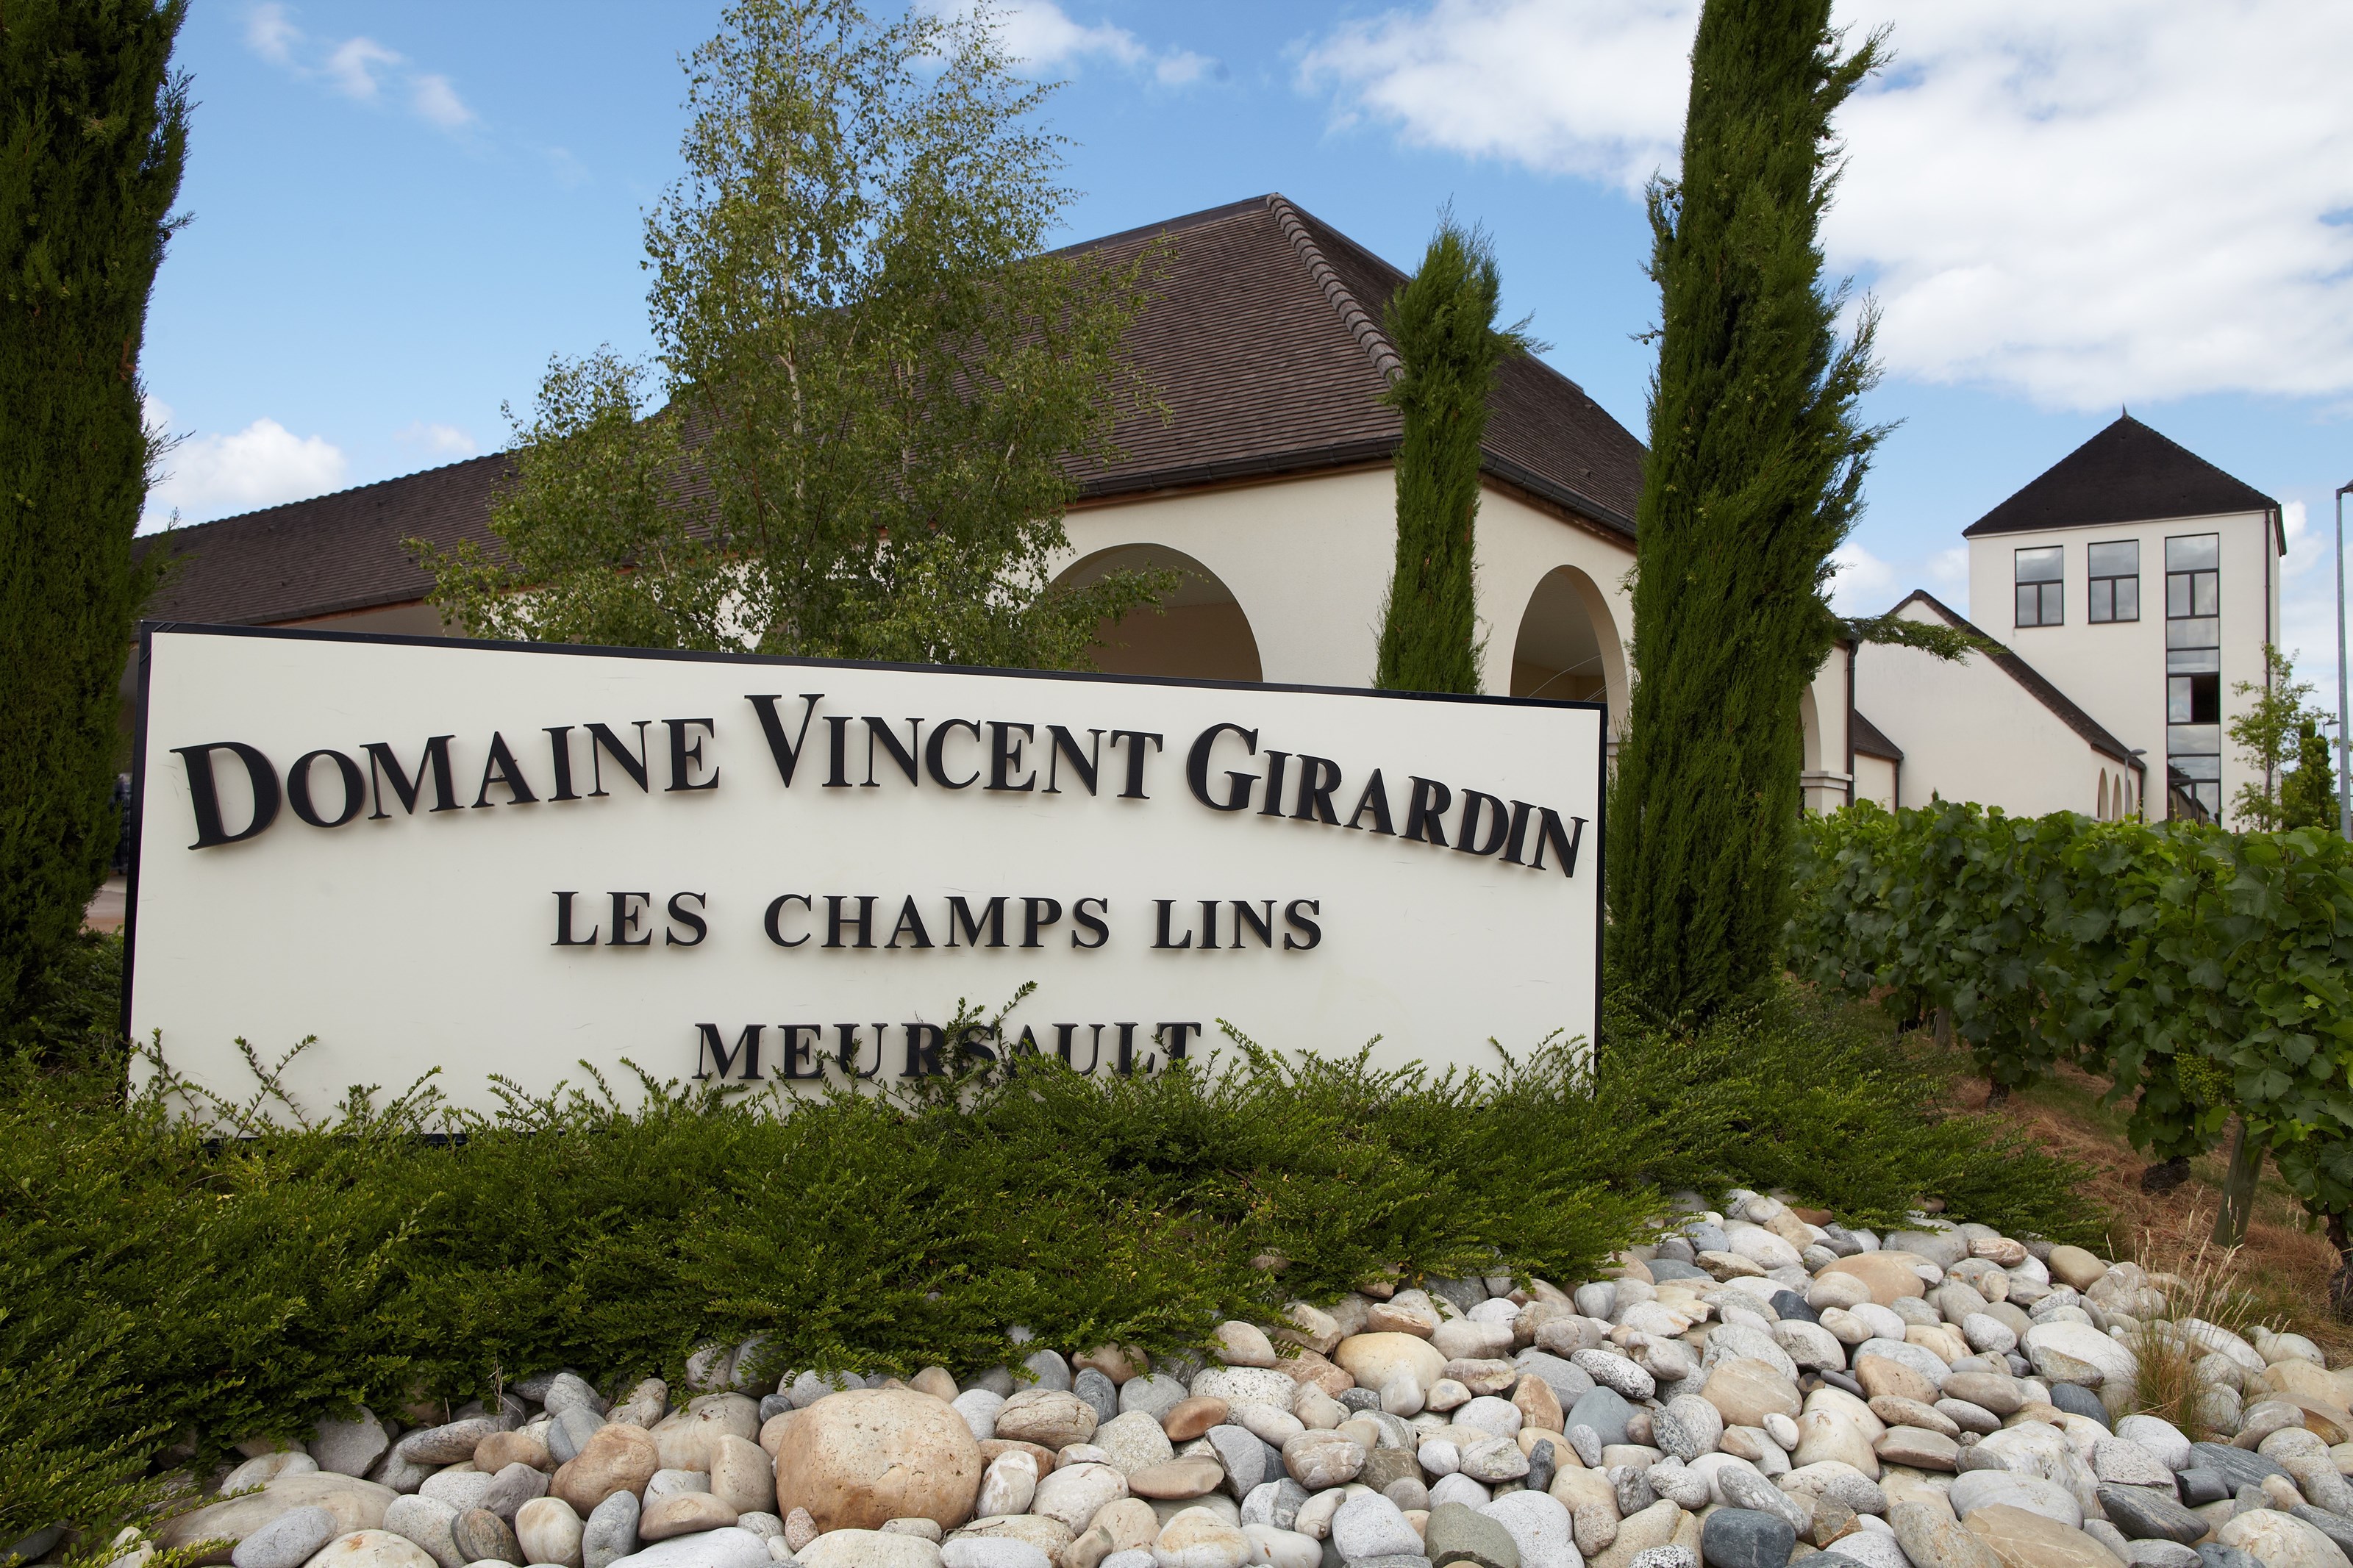 <p>Vincent Girardin startet sin virksomhet med meget beskjedne 2 hektar vinmark i 1980. Da hadde familien produsert vin i hele 11 generasjoner i Burgund, riktignok i noks&aring; begrenset m&aring;lestokk. Da faren trakk seg tilbake kort tid etter, arvet Girardin ytterligere noen f&aring; hektar vinmark i tillegg til de to han selv allerede opererte. Siden den gangen har den energiske og driftige Girardin &oslash;kt virksomheten, i f&oslash;rste rekke takket v&aelig;re det omfattende oppkj&oslash;pet av vinmarkene til Clerc-familien i Puligny-Montrachet i 2001-02. Tidligere hadde Girardin kj&oslash;pt druer fra Clerc, f&oslash;lgelig hadde han ikke hatt full kontroll over behandlingen av og arbeidet i vinmarkene. Ved dette omfattende oppkj&oslash;pet sikret Girardin seg blant annet tilgang til en stor andel av den absolutte kremen av hvitvinsmarker i Burgund, i tillegg til at Girardin fra og med 2002-&aring;rgangen fikk full kontroll over b&aring;de vitikultur og vinifikasjon. Vinmarkene drives i dag etter et n&oslash;ye fastlagt &oslash;kologisk m&oslash;nster uten kunstgj&oslash;dsel og kunstige plantevernmidler. Dette har ytterligere bidratt til &aring; &oslash;ke kvaliteten og s&aelig;rpreget p&aring; portef&oslash;ljen.</p>
<p>I 2012 valgte Girardin &aring; selge vinhuset til sin forretningspartner gjennom lang tid, Jean-Pierre Ni&eacute;, ettersom hans egen helse ikke lenger var p&aring; topp og ingen av barna &oslash;nsket &aring; ta over virksomheten. De ni personene som jobber p&aring; ving&aring;rden er imidlertid de samme, og &oslash;nologen Eric Germain, som har v&aelig;rt Vincents h&oslash;yre h&aring;nd siden begynnelsen av 2000-tallet, tar stadig vinene til nye h&oslash;yder. Eric kjenner hver eneste parsell som sin egen bukselomme, og det er hans personlige touch som s&oslash;rger for husets rene, finessepregede og livlige vinstil med perfekt balanse mellom smaksrikdom og eleganse.</p>